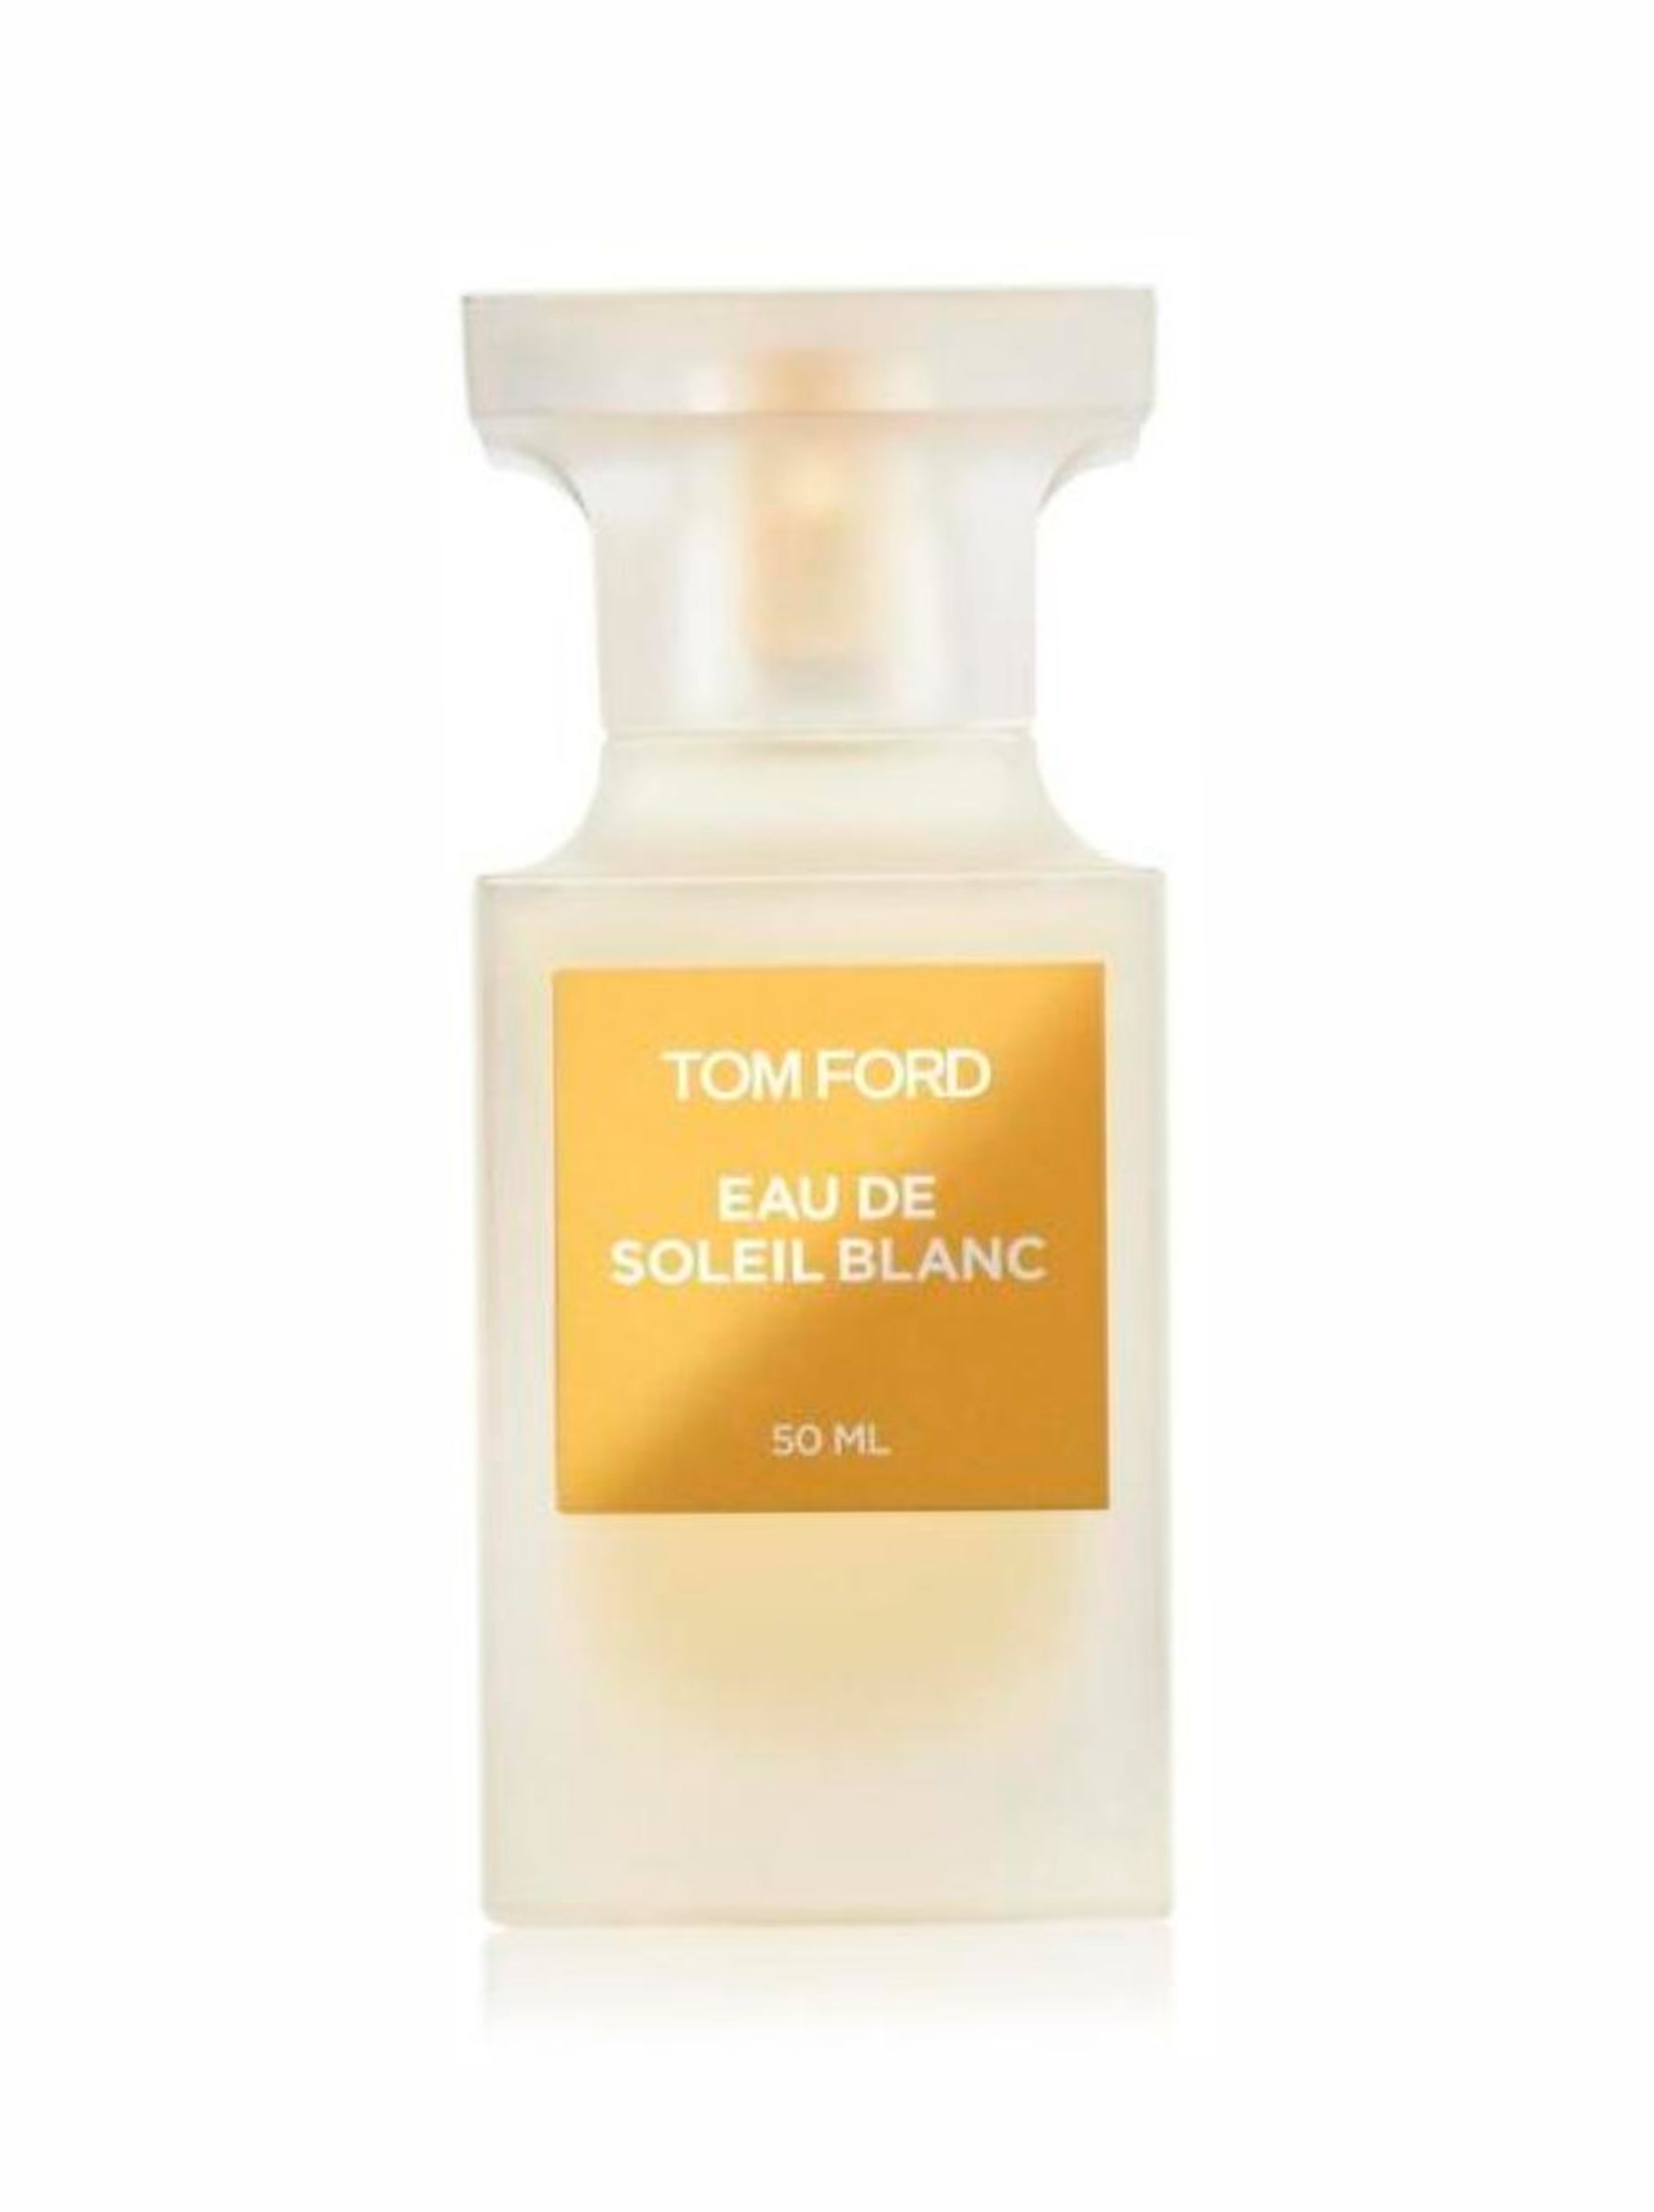 Моил. Tom Ford Soleil Blanc 50 ml. Tom Ford Soleil Blanc 100ml. Tom Ford Eau Soleil Blanc. Tom Ford Eau de Soleil Blanc.